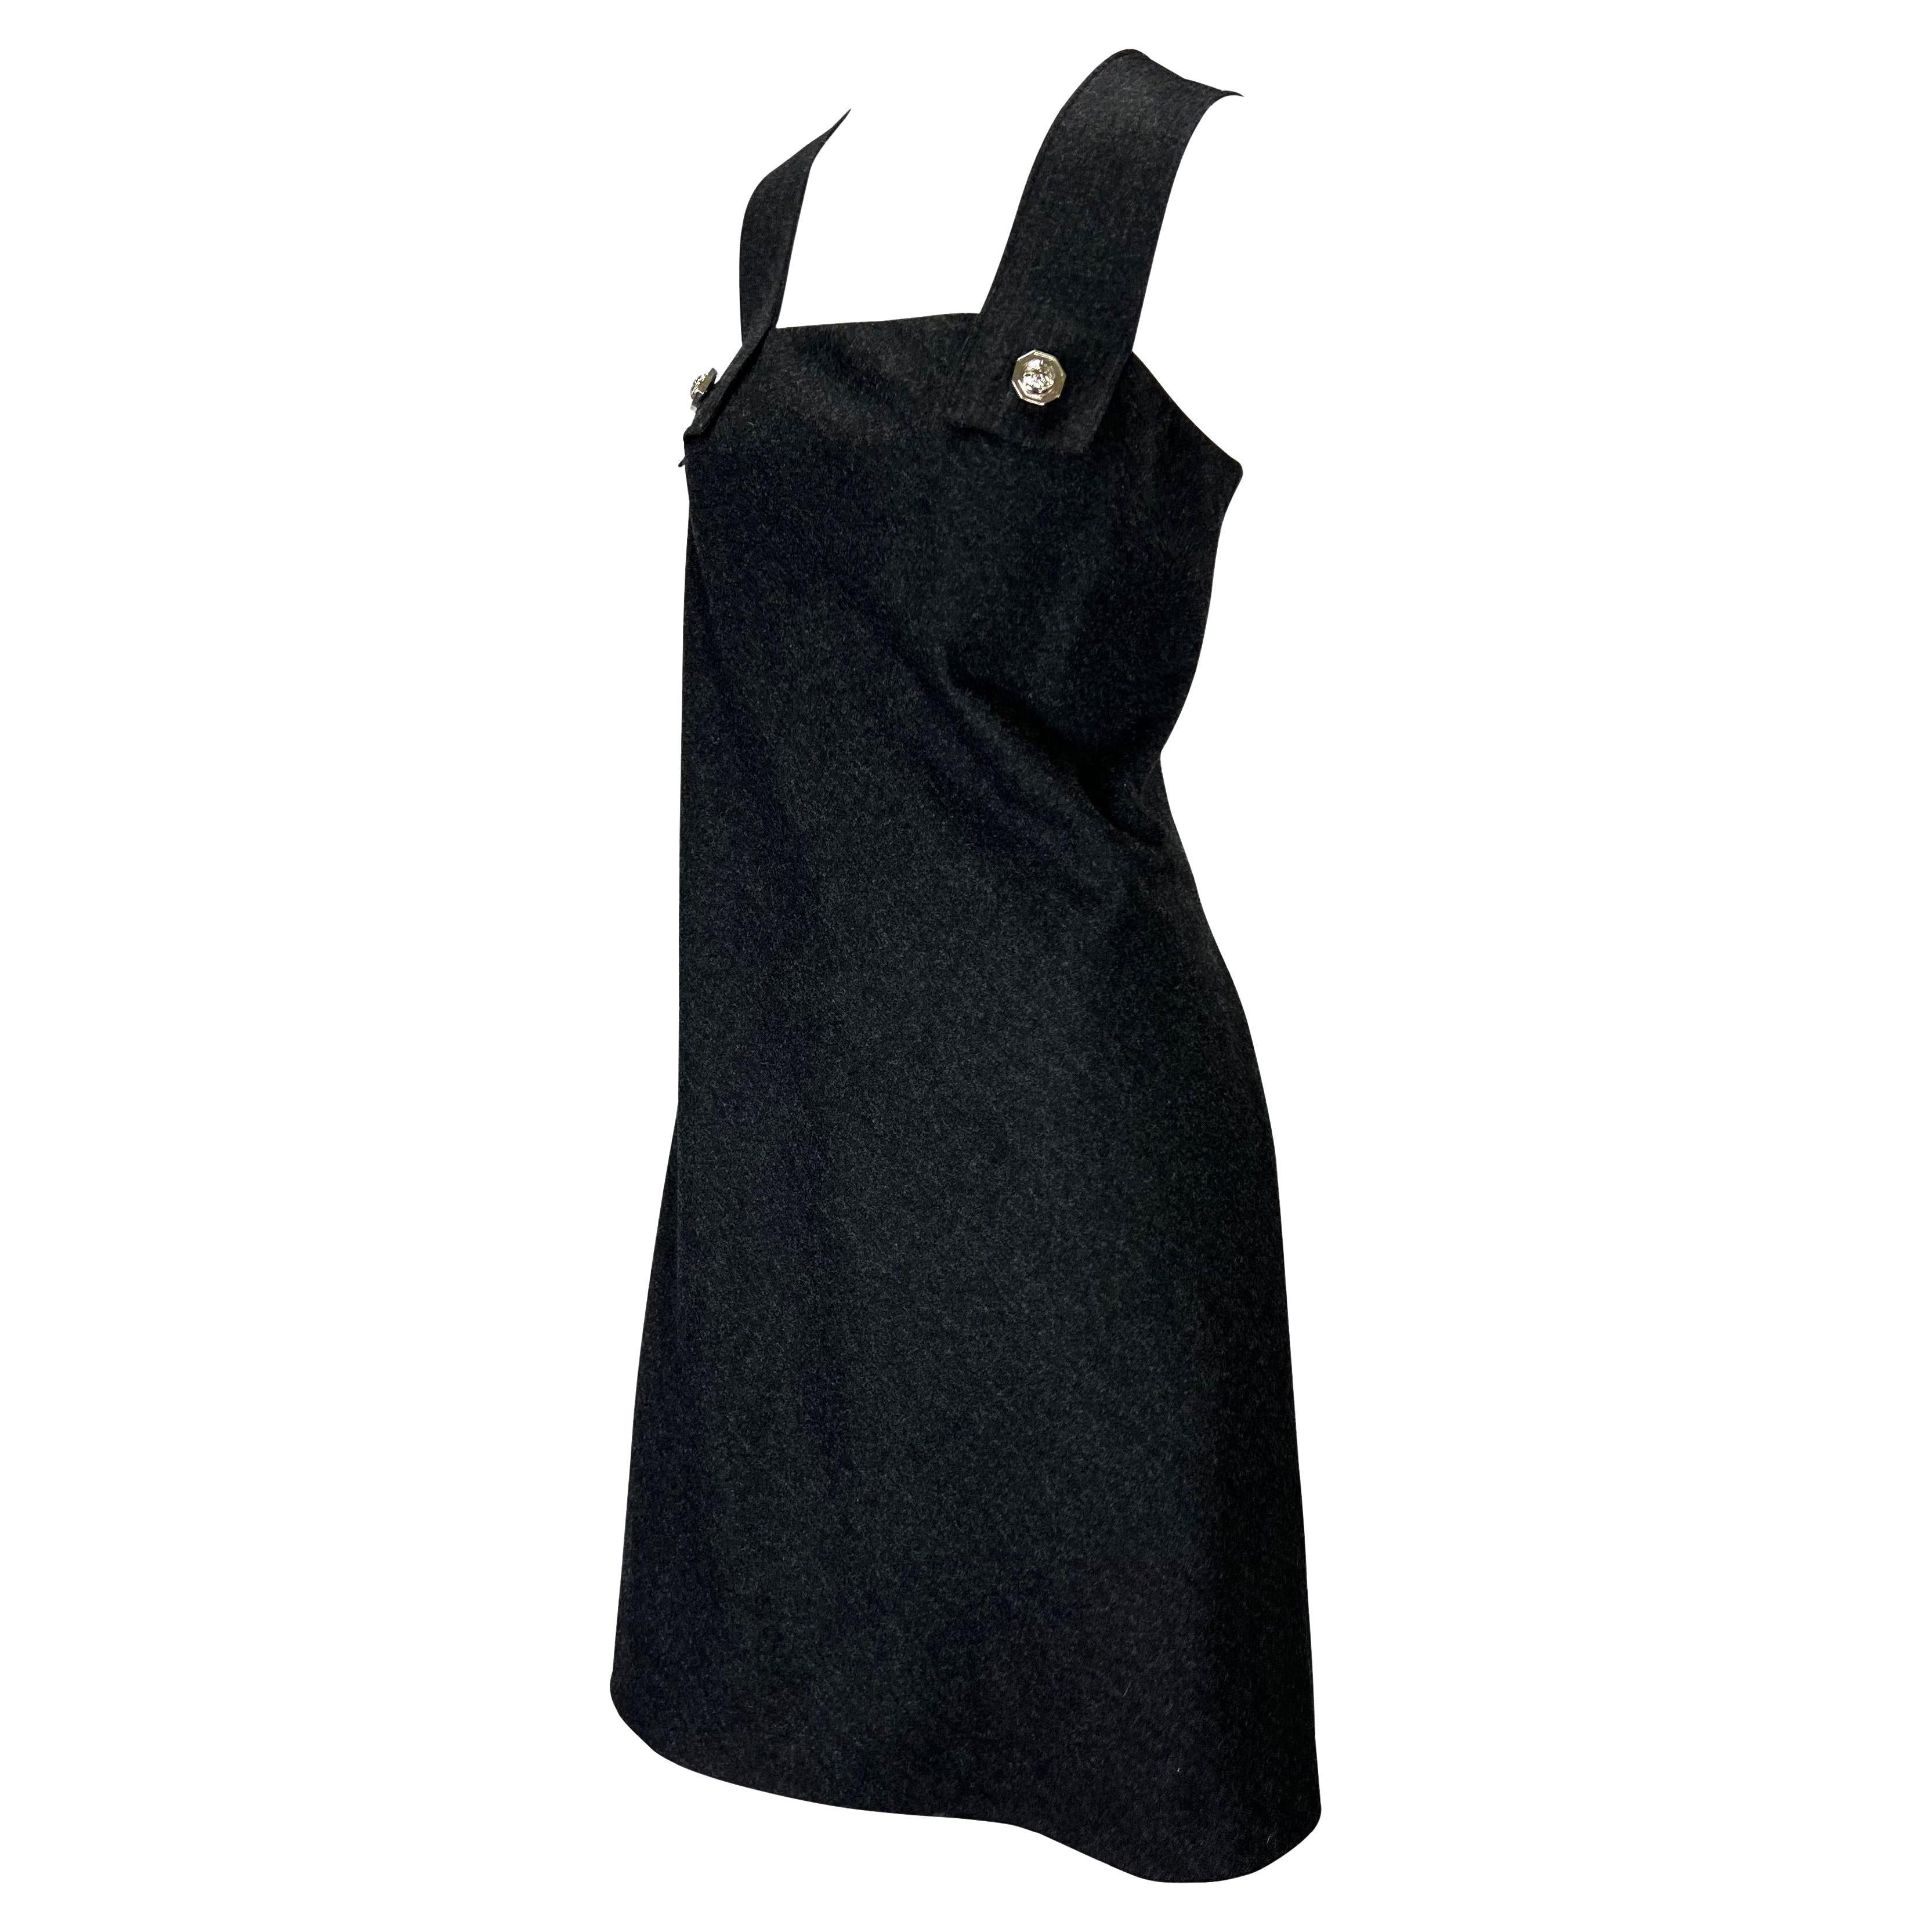 Présentation d'une robe de style général Gianni Versace Couture, conçue par Gianni Versace. Issue de la collection Printemps/Été 1994, cette robe en laine présente de larges bretelles reliées par les boutons à vis du logo Medusa, très utilisés dans